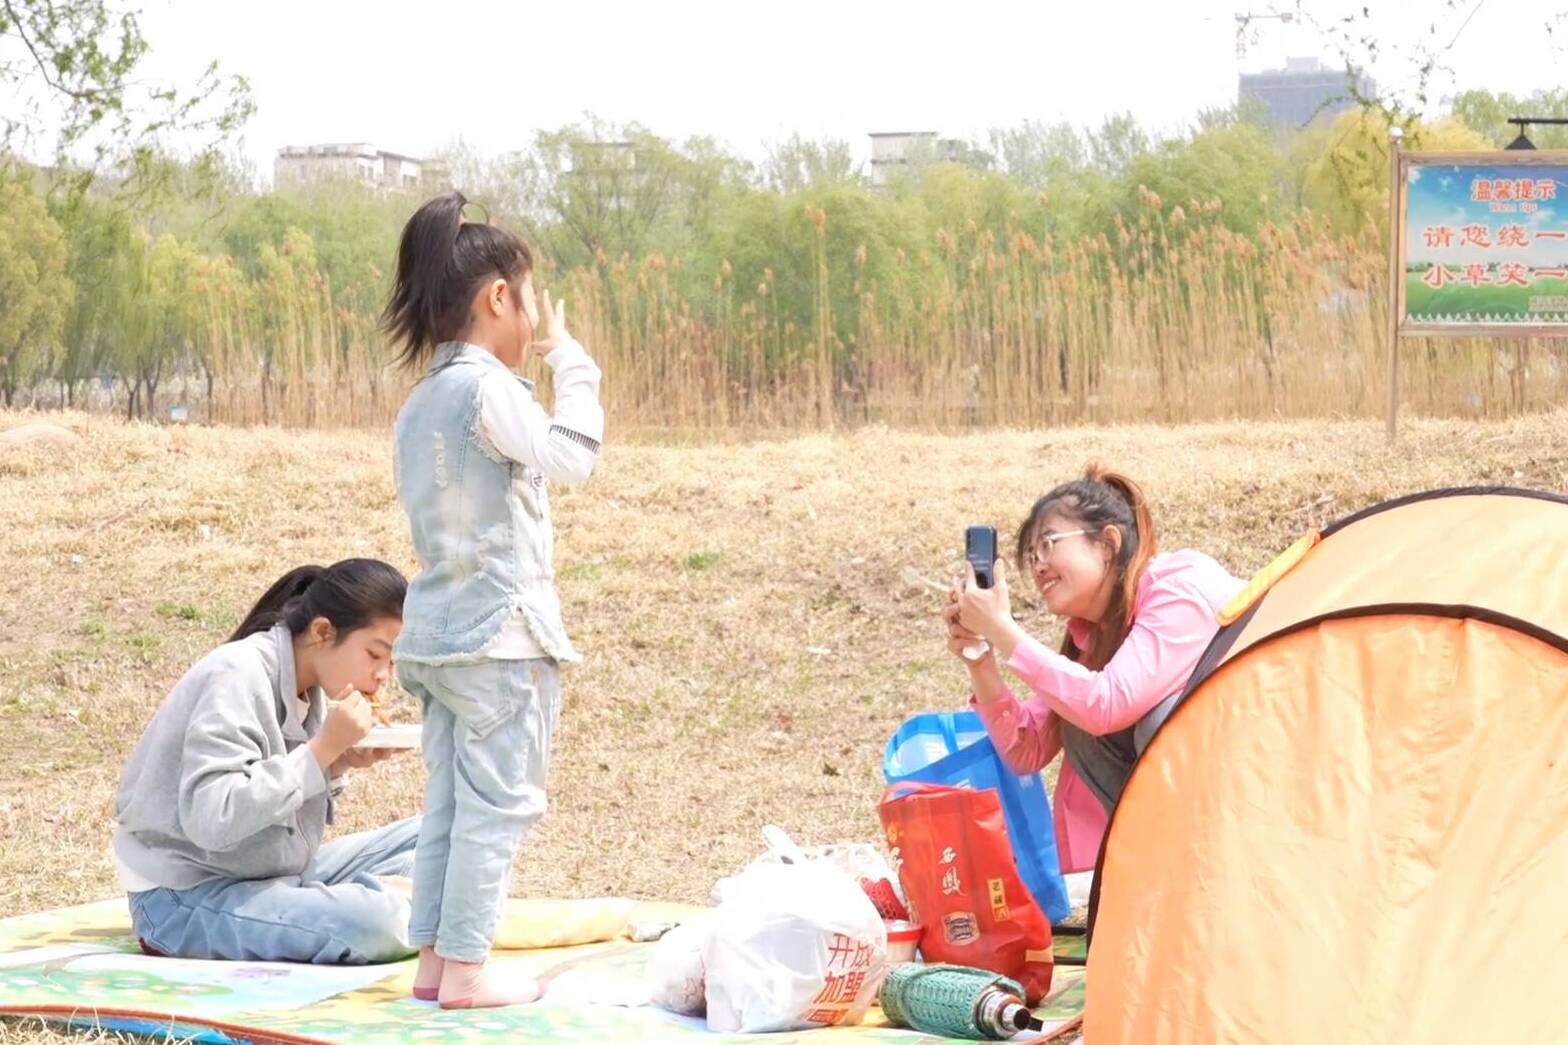 帐篷林立 热闹非凡！德州减河湿地公园吸引京津冀游客打卡游玩